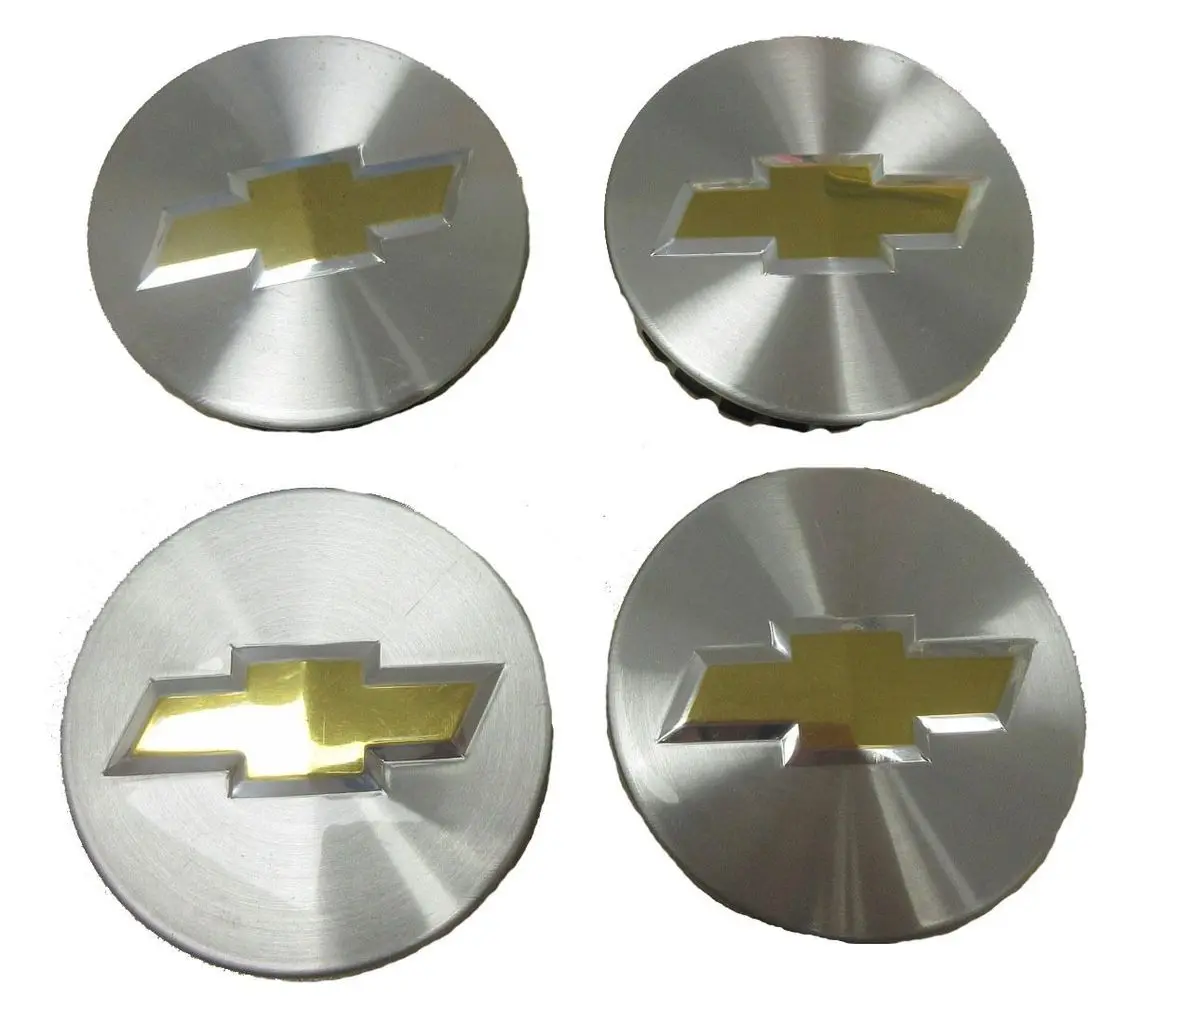 A set of four chevy logo chrome plated center caps.